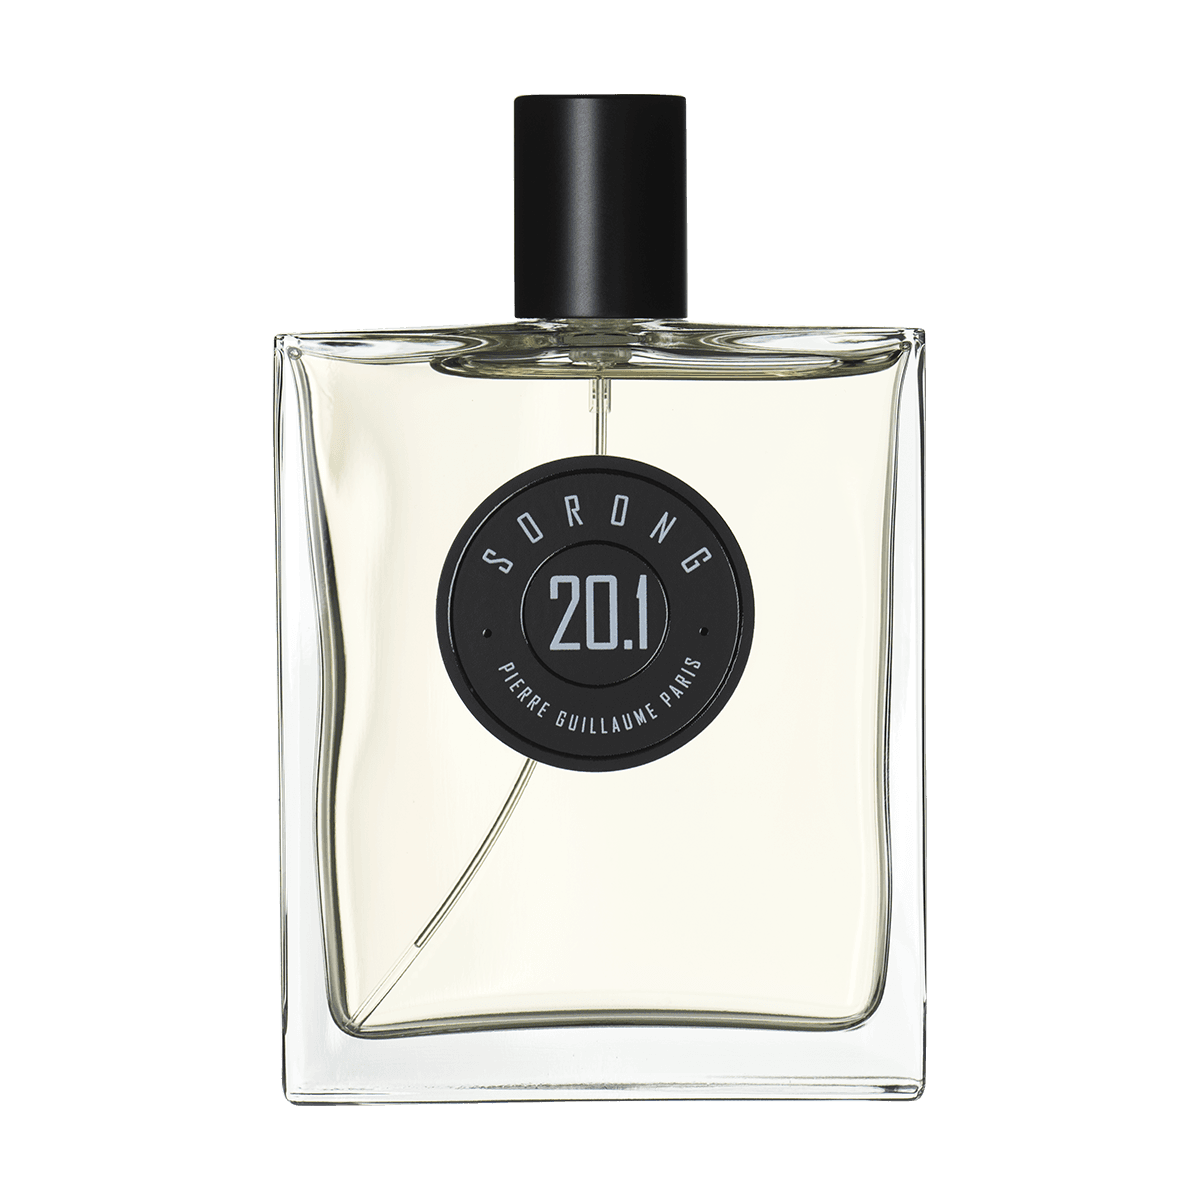 Pierre Guillaume Paris - 20.1 Sorong eau de parfum 100 ml | Perfume Lounge